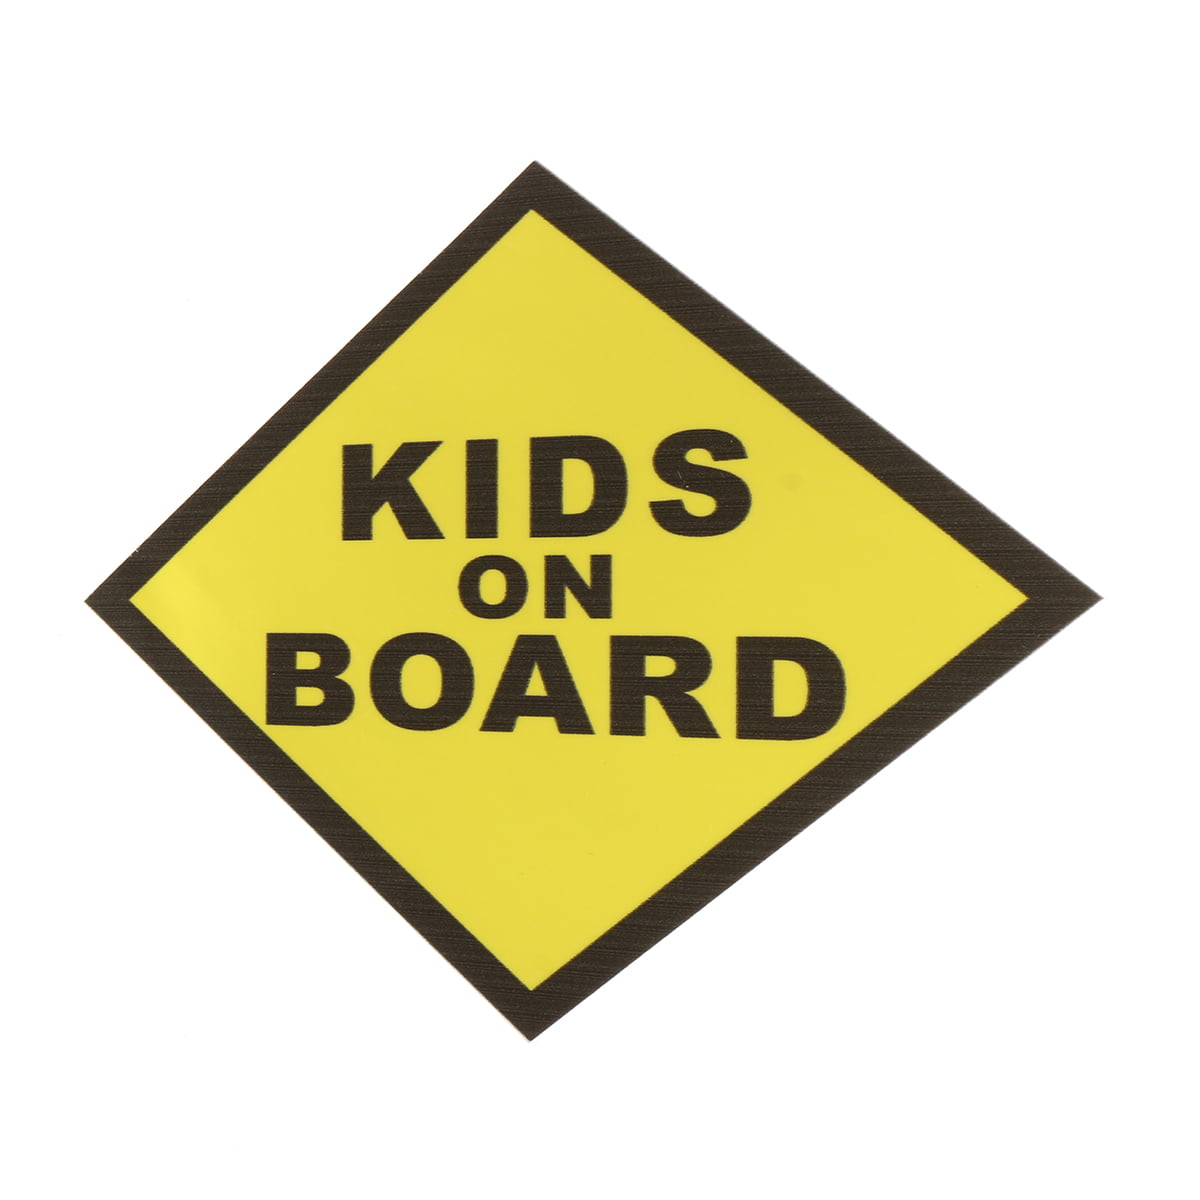 CHILDREN ON BOARD Vinyl Decal Car Window Bumper Sticker Child Safety Sign